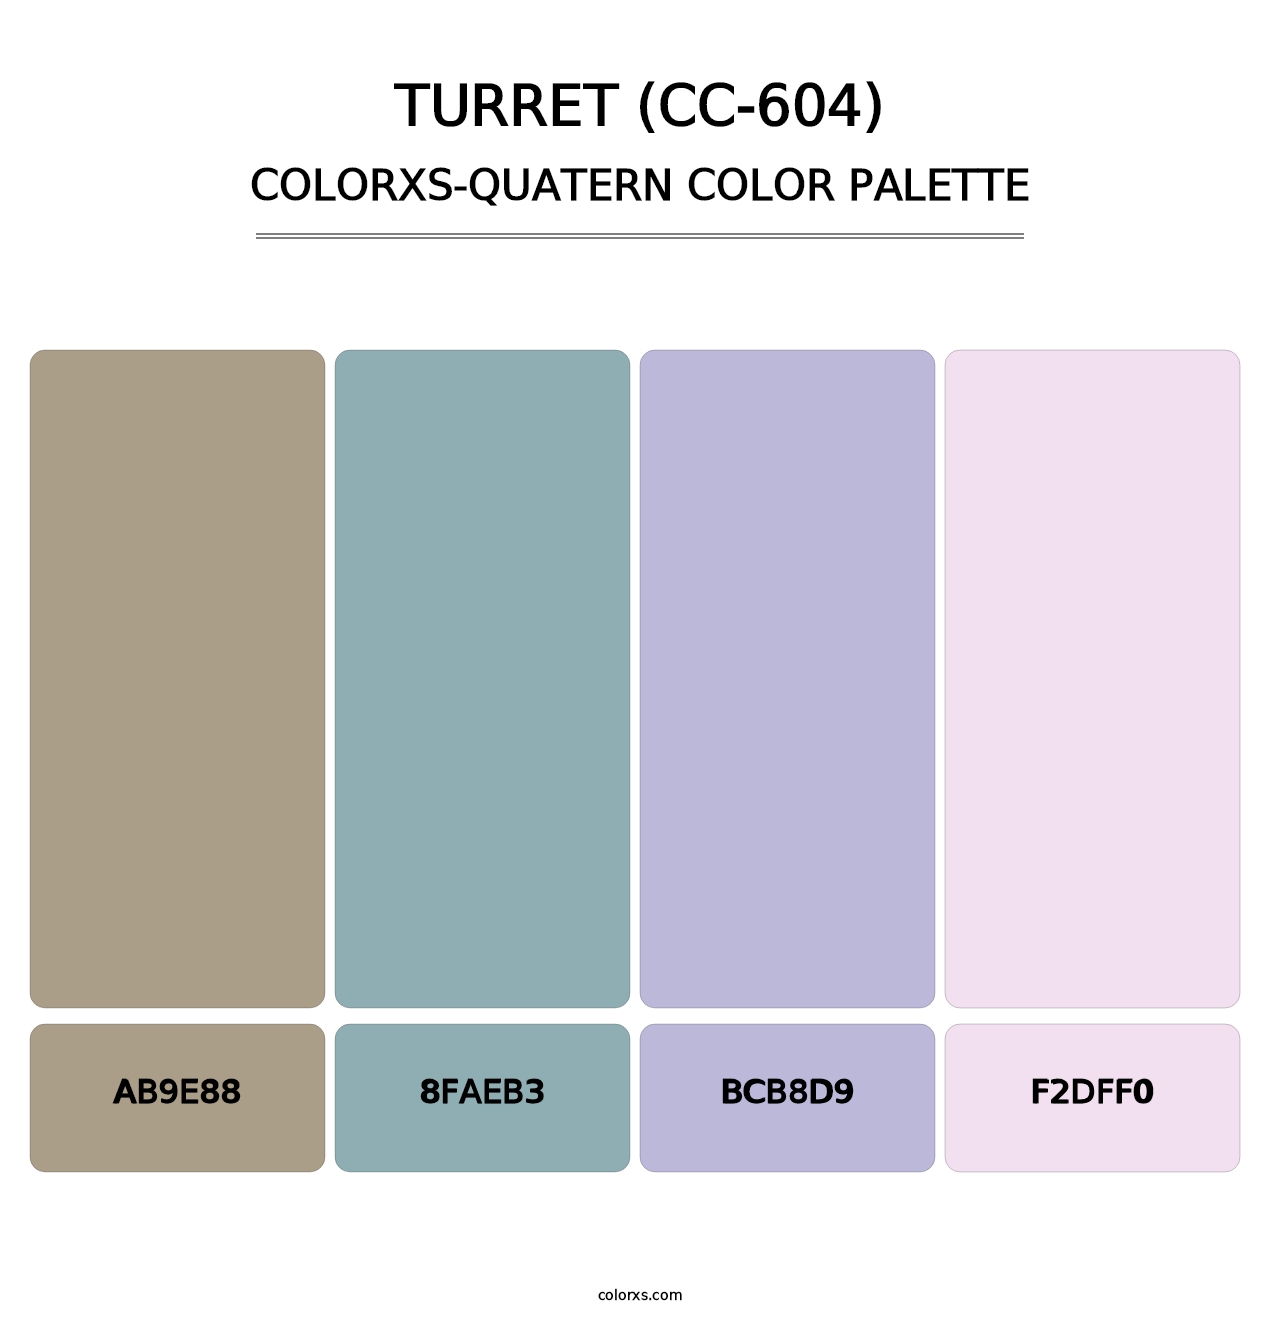 Turret (CC-604) - Colorxs Quatern Palette